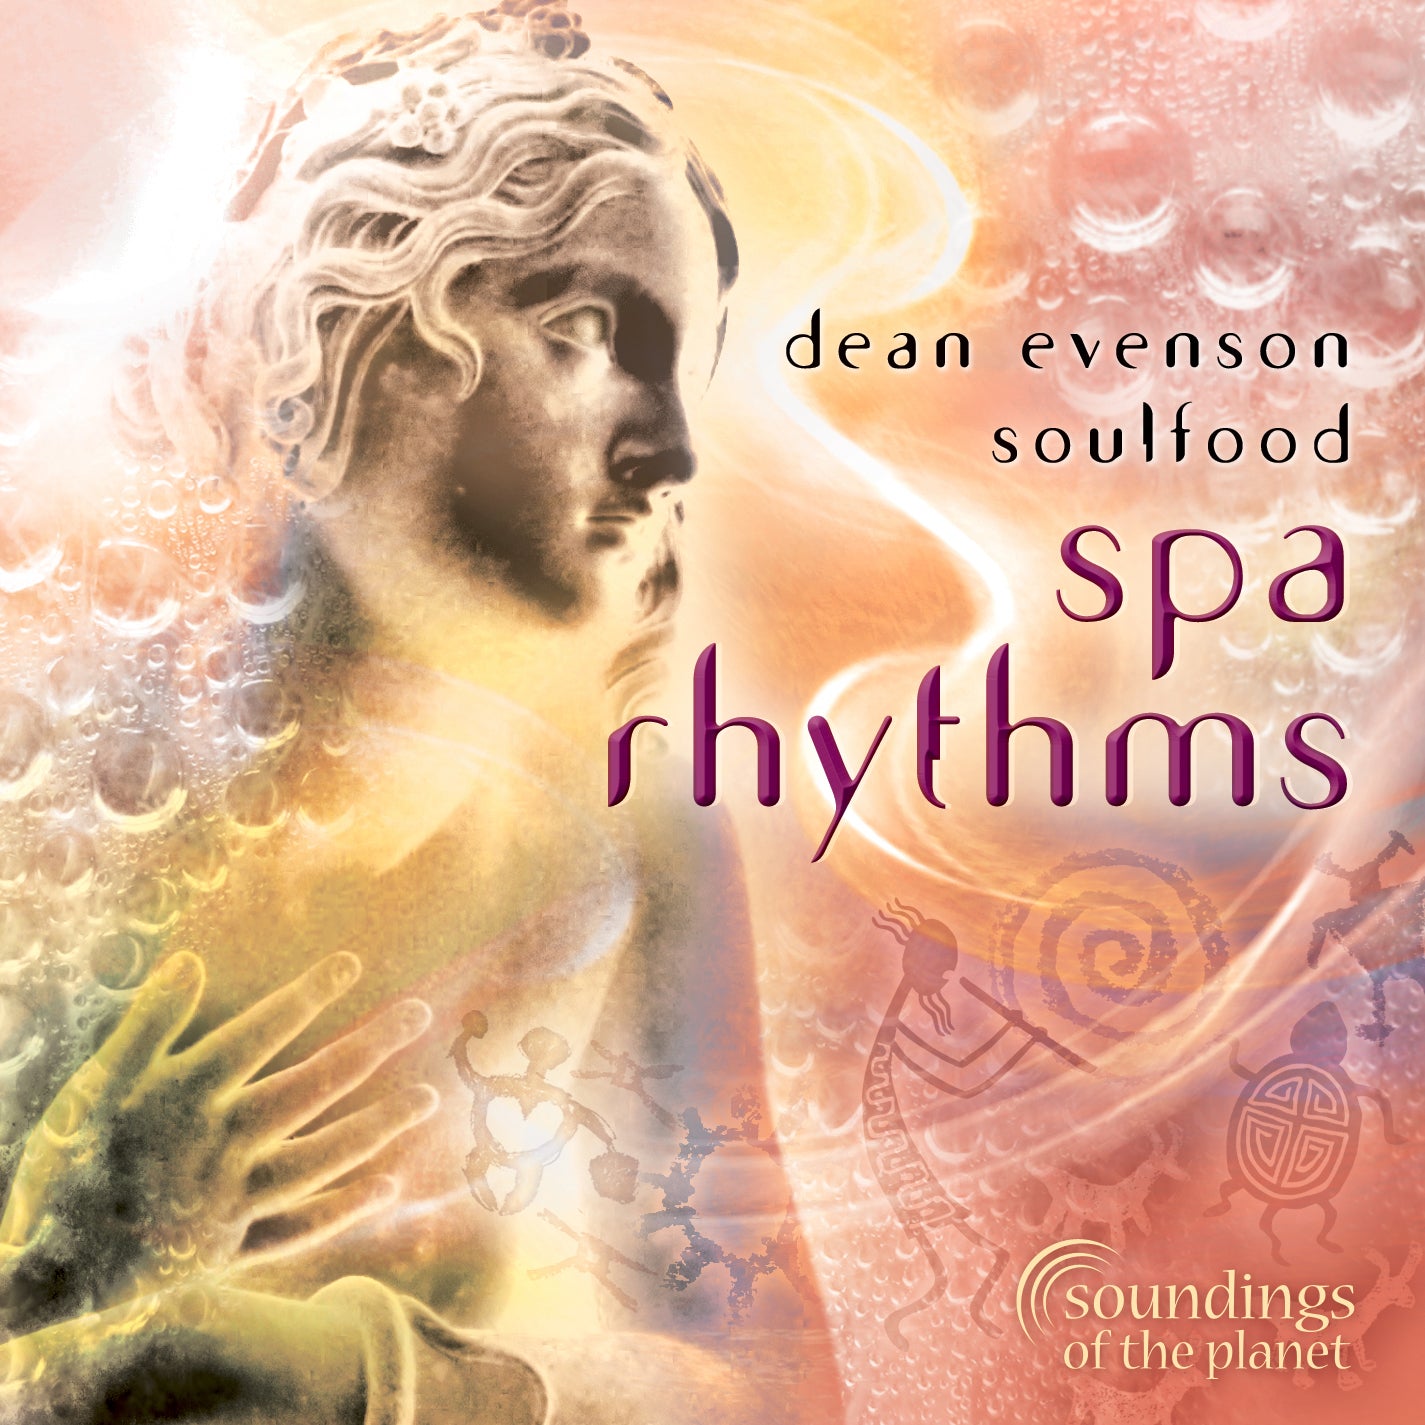 spa rhythms Dean Evenson Soulfood